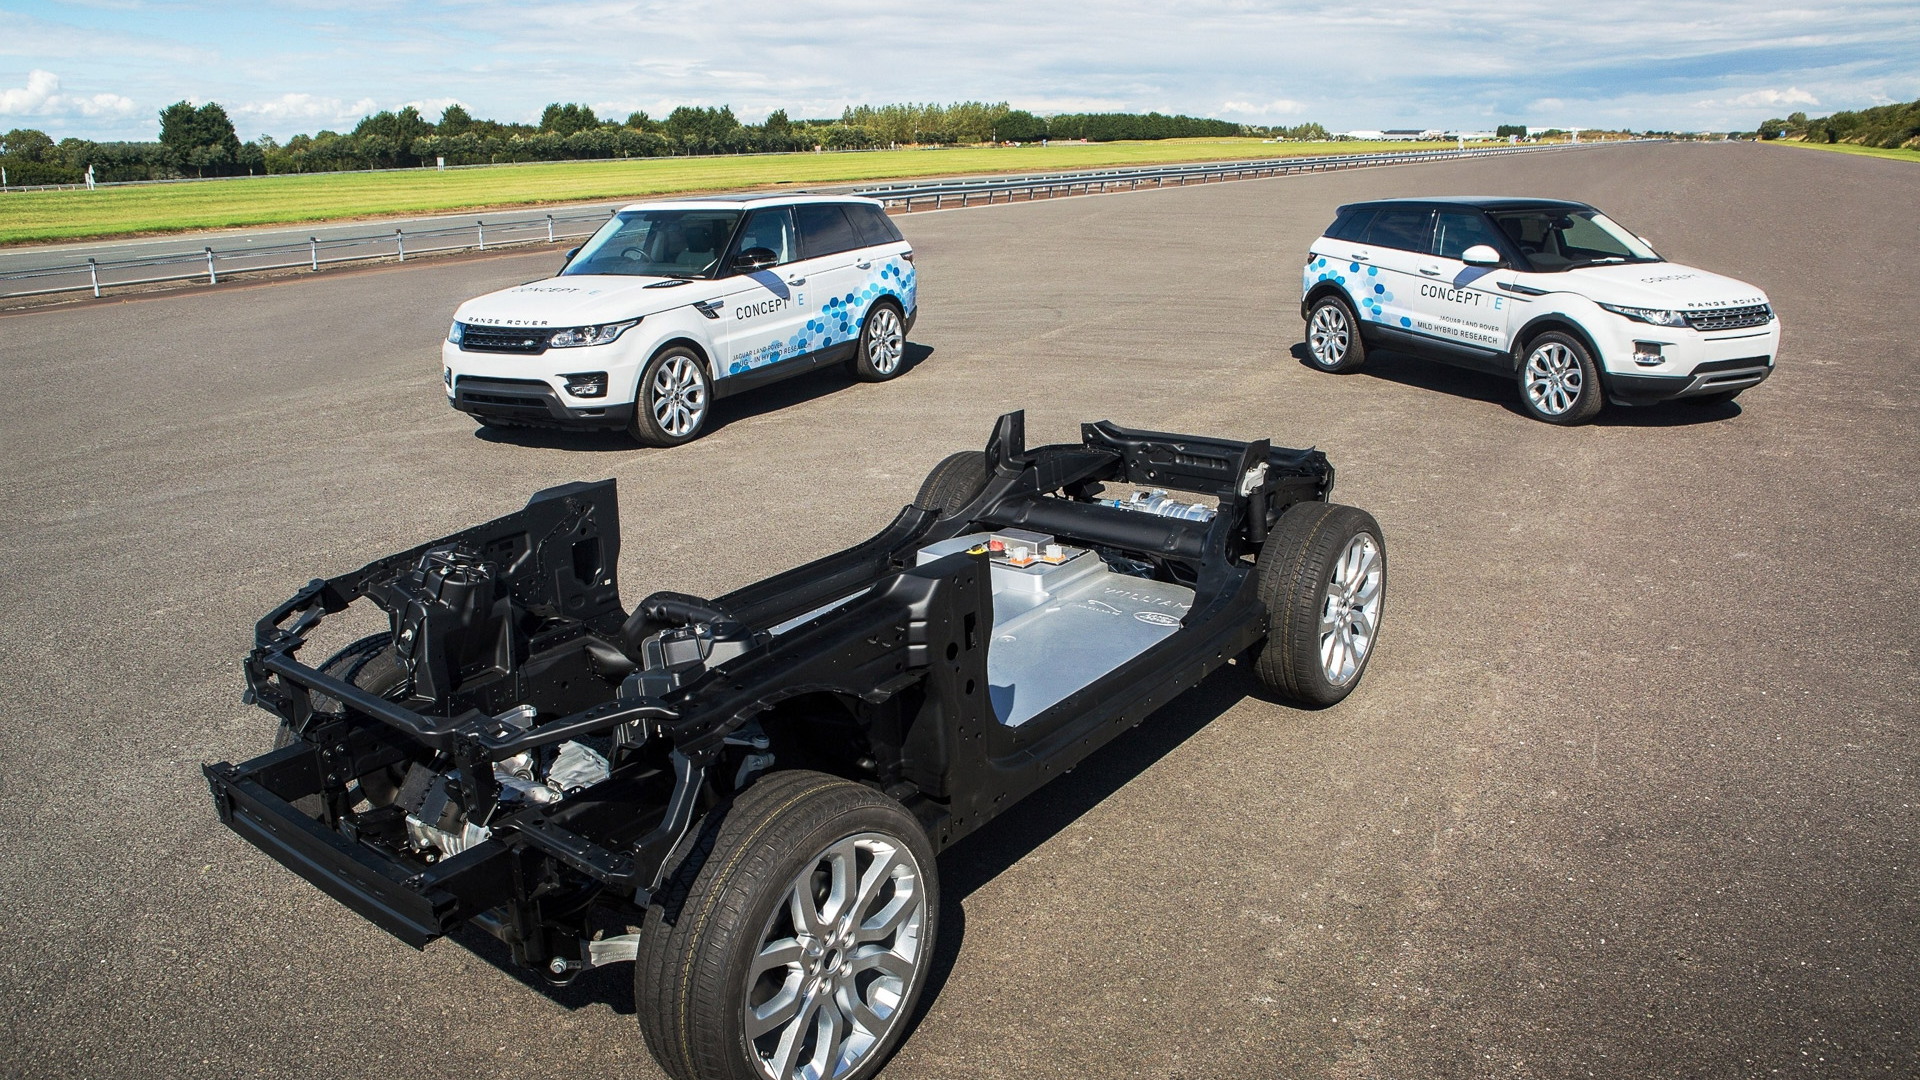 Jaguar Land Rover electrified vehicle concepts